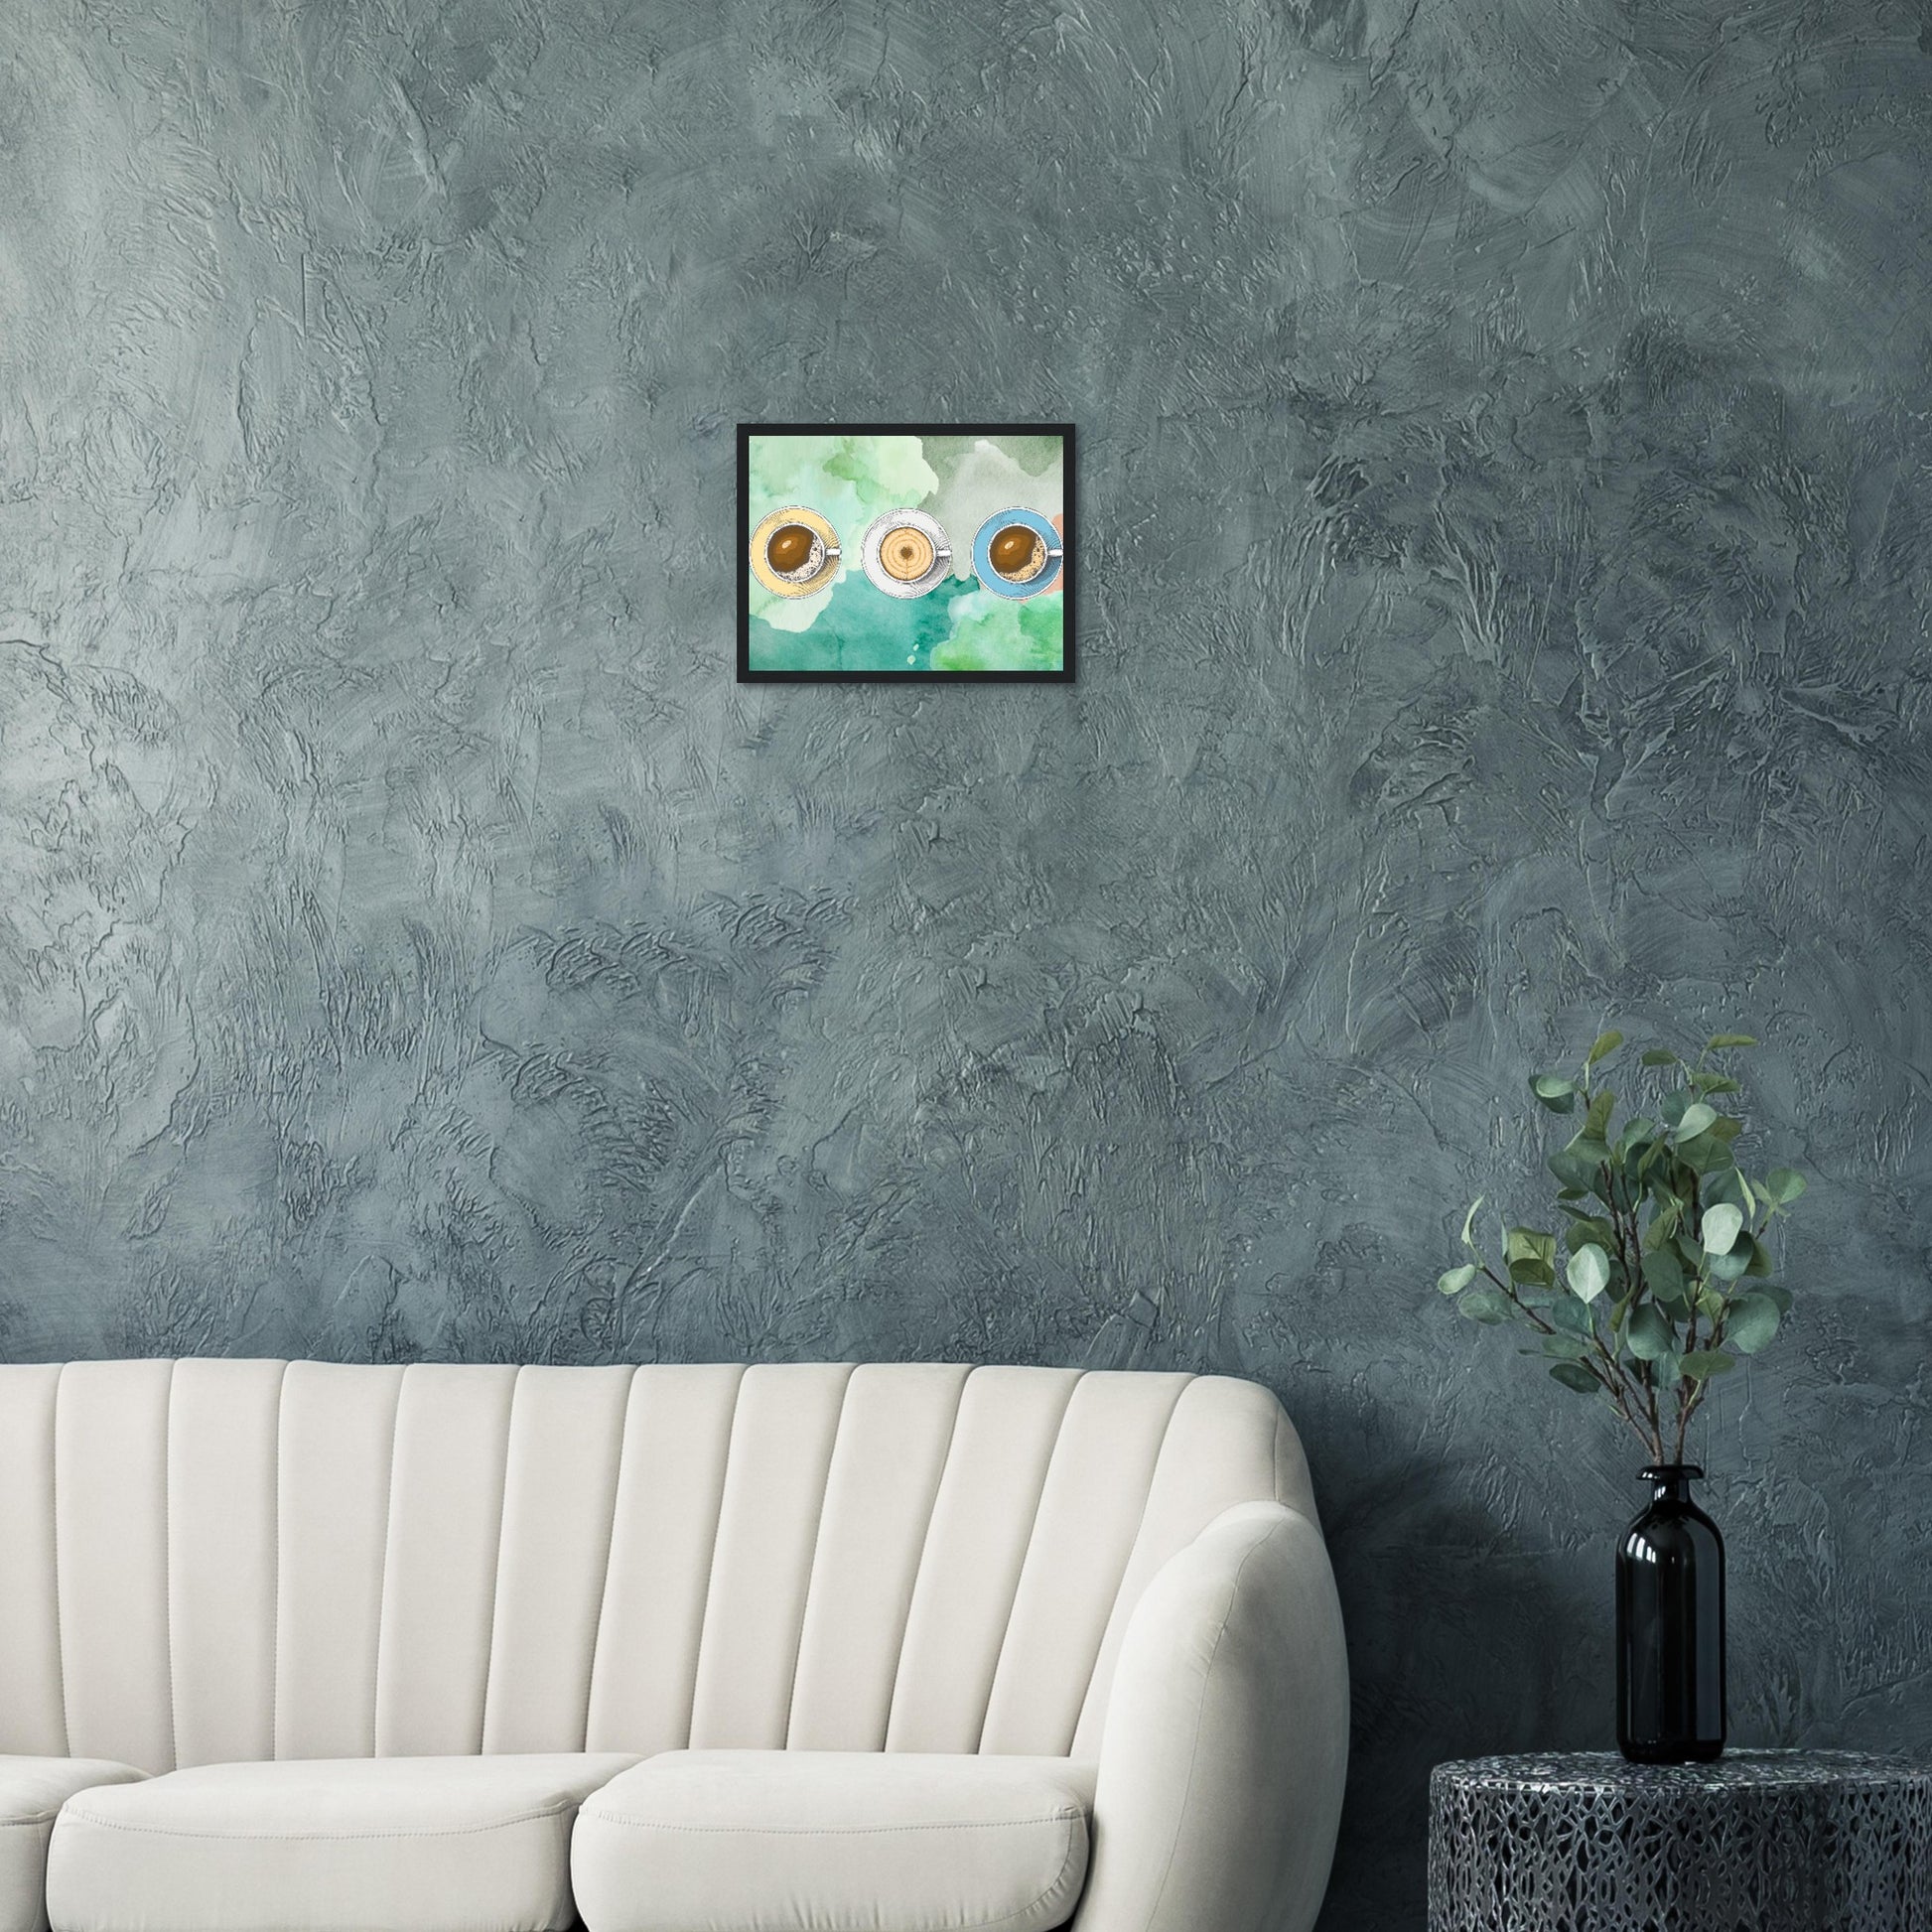 Ein Bild im Schwarzem Rahmen mit buntem Hintergrund in Wasserfarben. Im Vordergrund Sind Drei Tassen Kaffe. Eine Tasse Beige, Weiß und Blau.  Das Bild hängt über einem Sofa an einer dunklen Wand im Wohnzimmer..